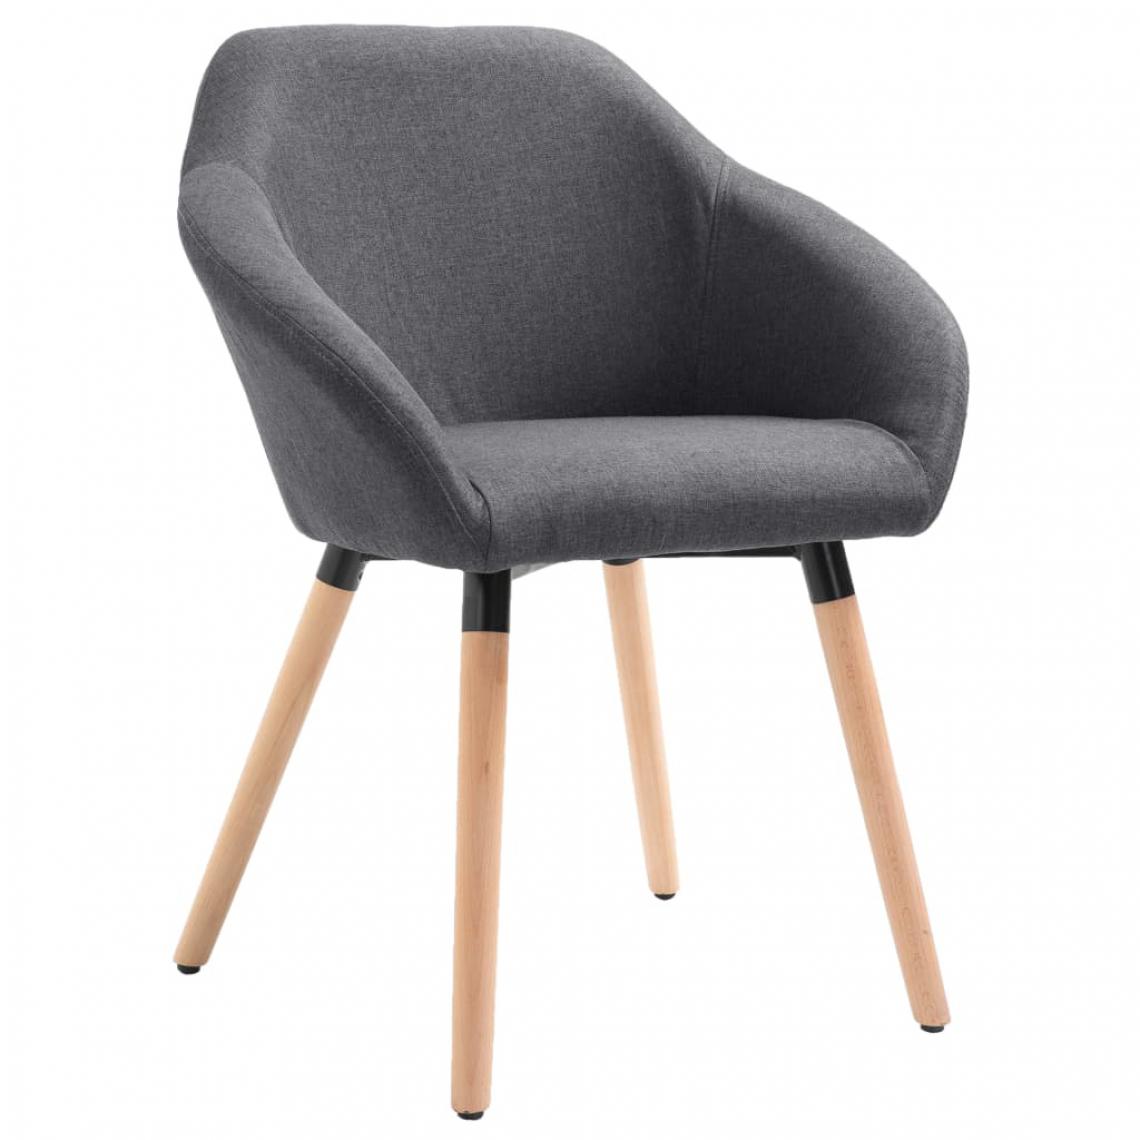 Decoshop26 - Chaise de salle à manger design moderne pieds en bois tissu gris foncé CDS020040 - Chaises